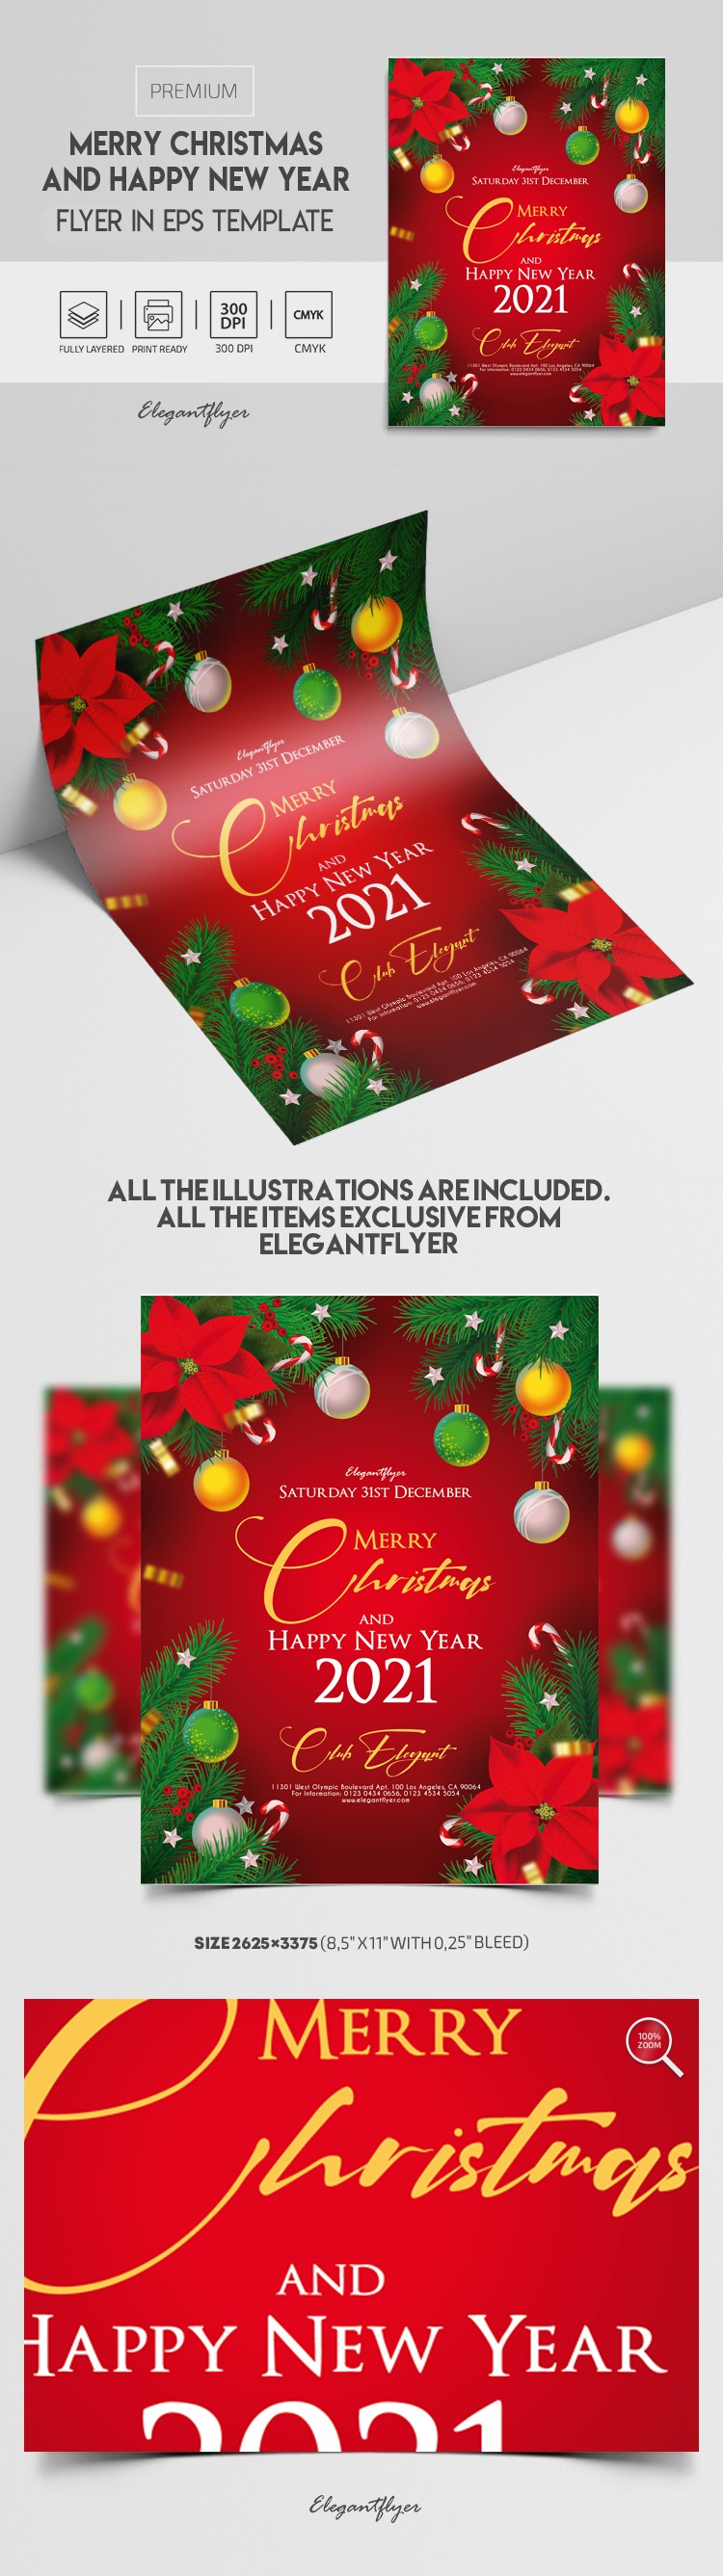 圣诞快乐和新年快乐传单 by ElegantFlyer